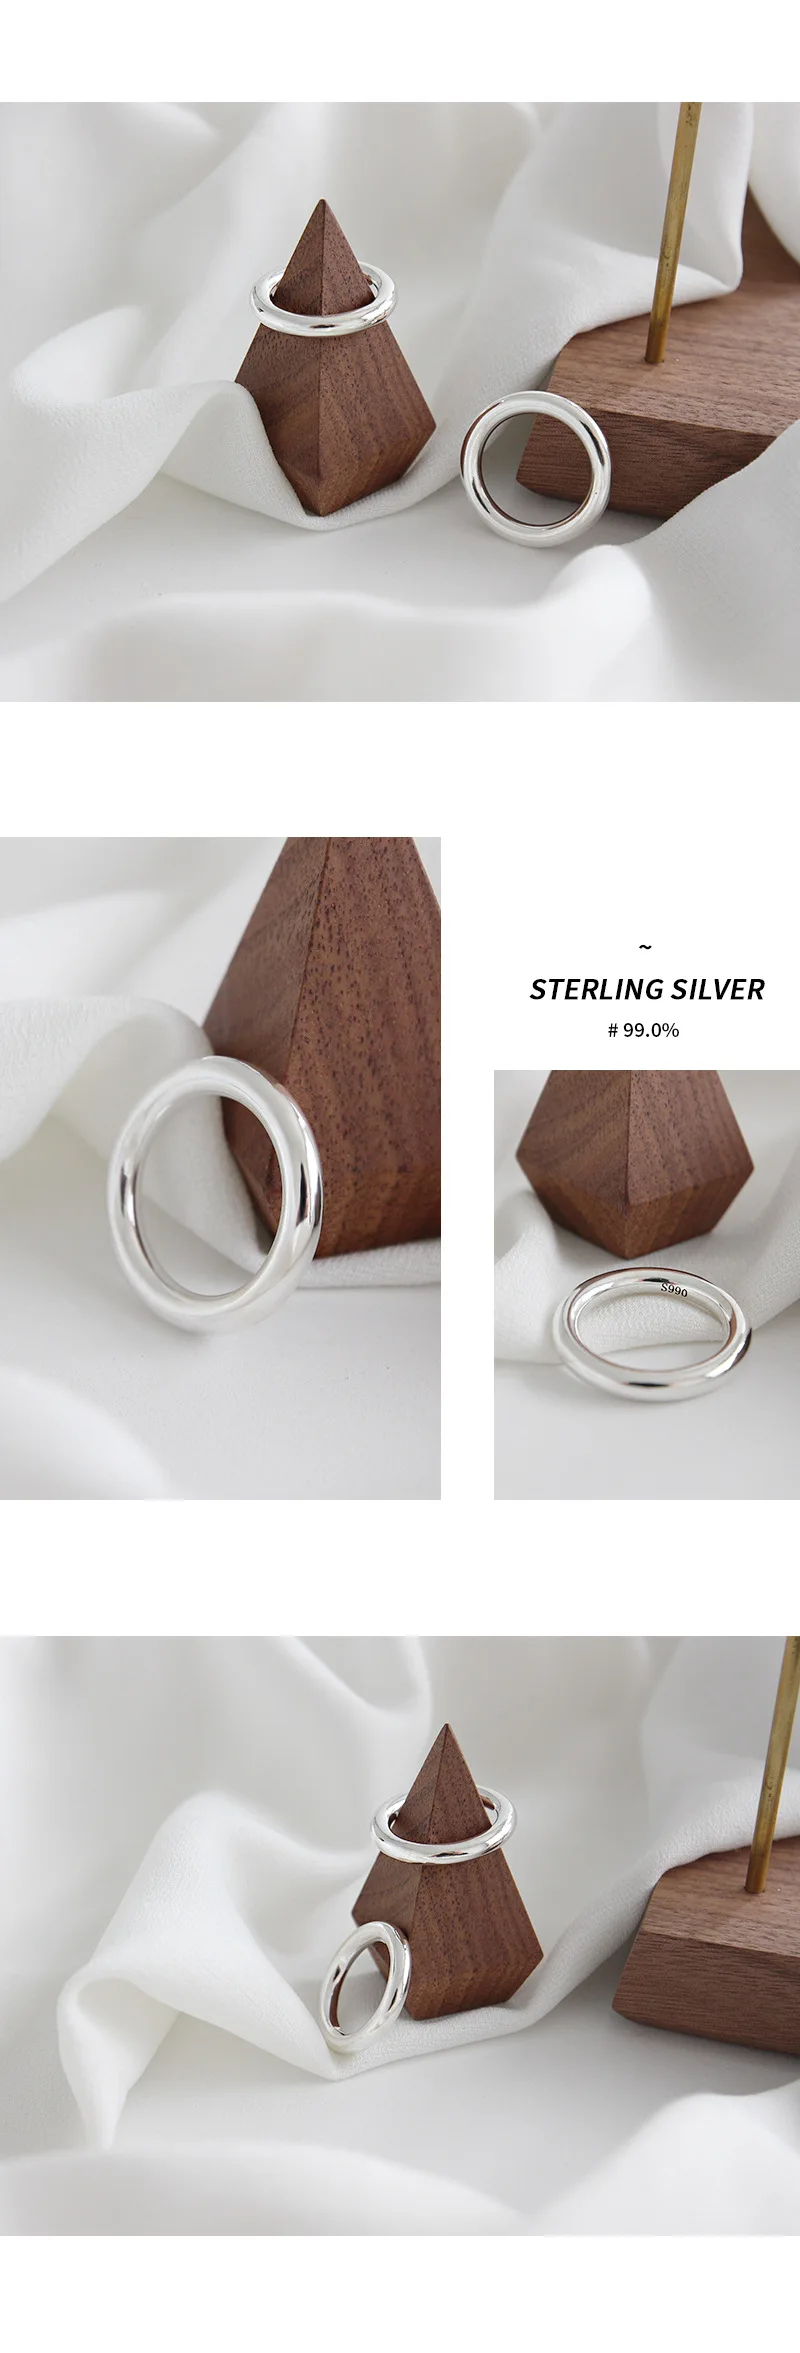 Tanio F.I.N.S minimalistyczny 990 srebrny, gładki pierścionek klasyczny pierścionek zaręczynowy sklep